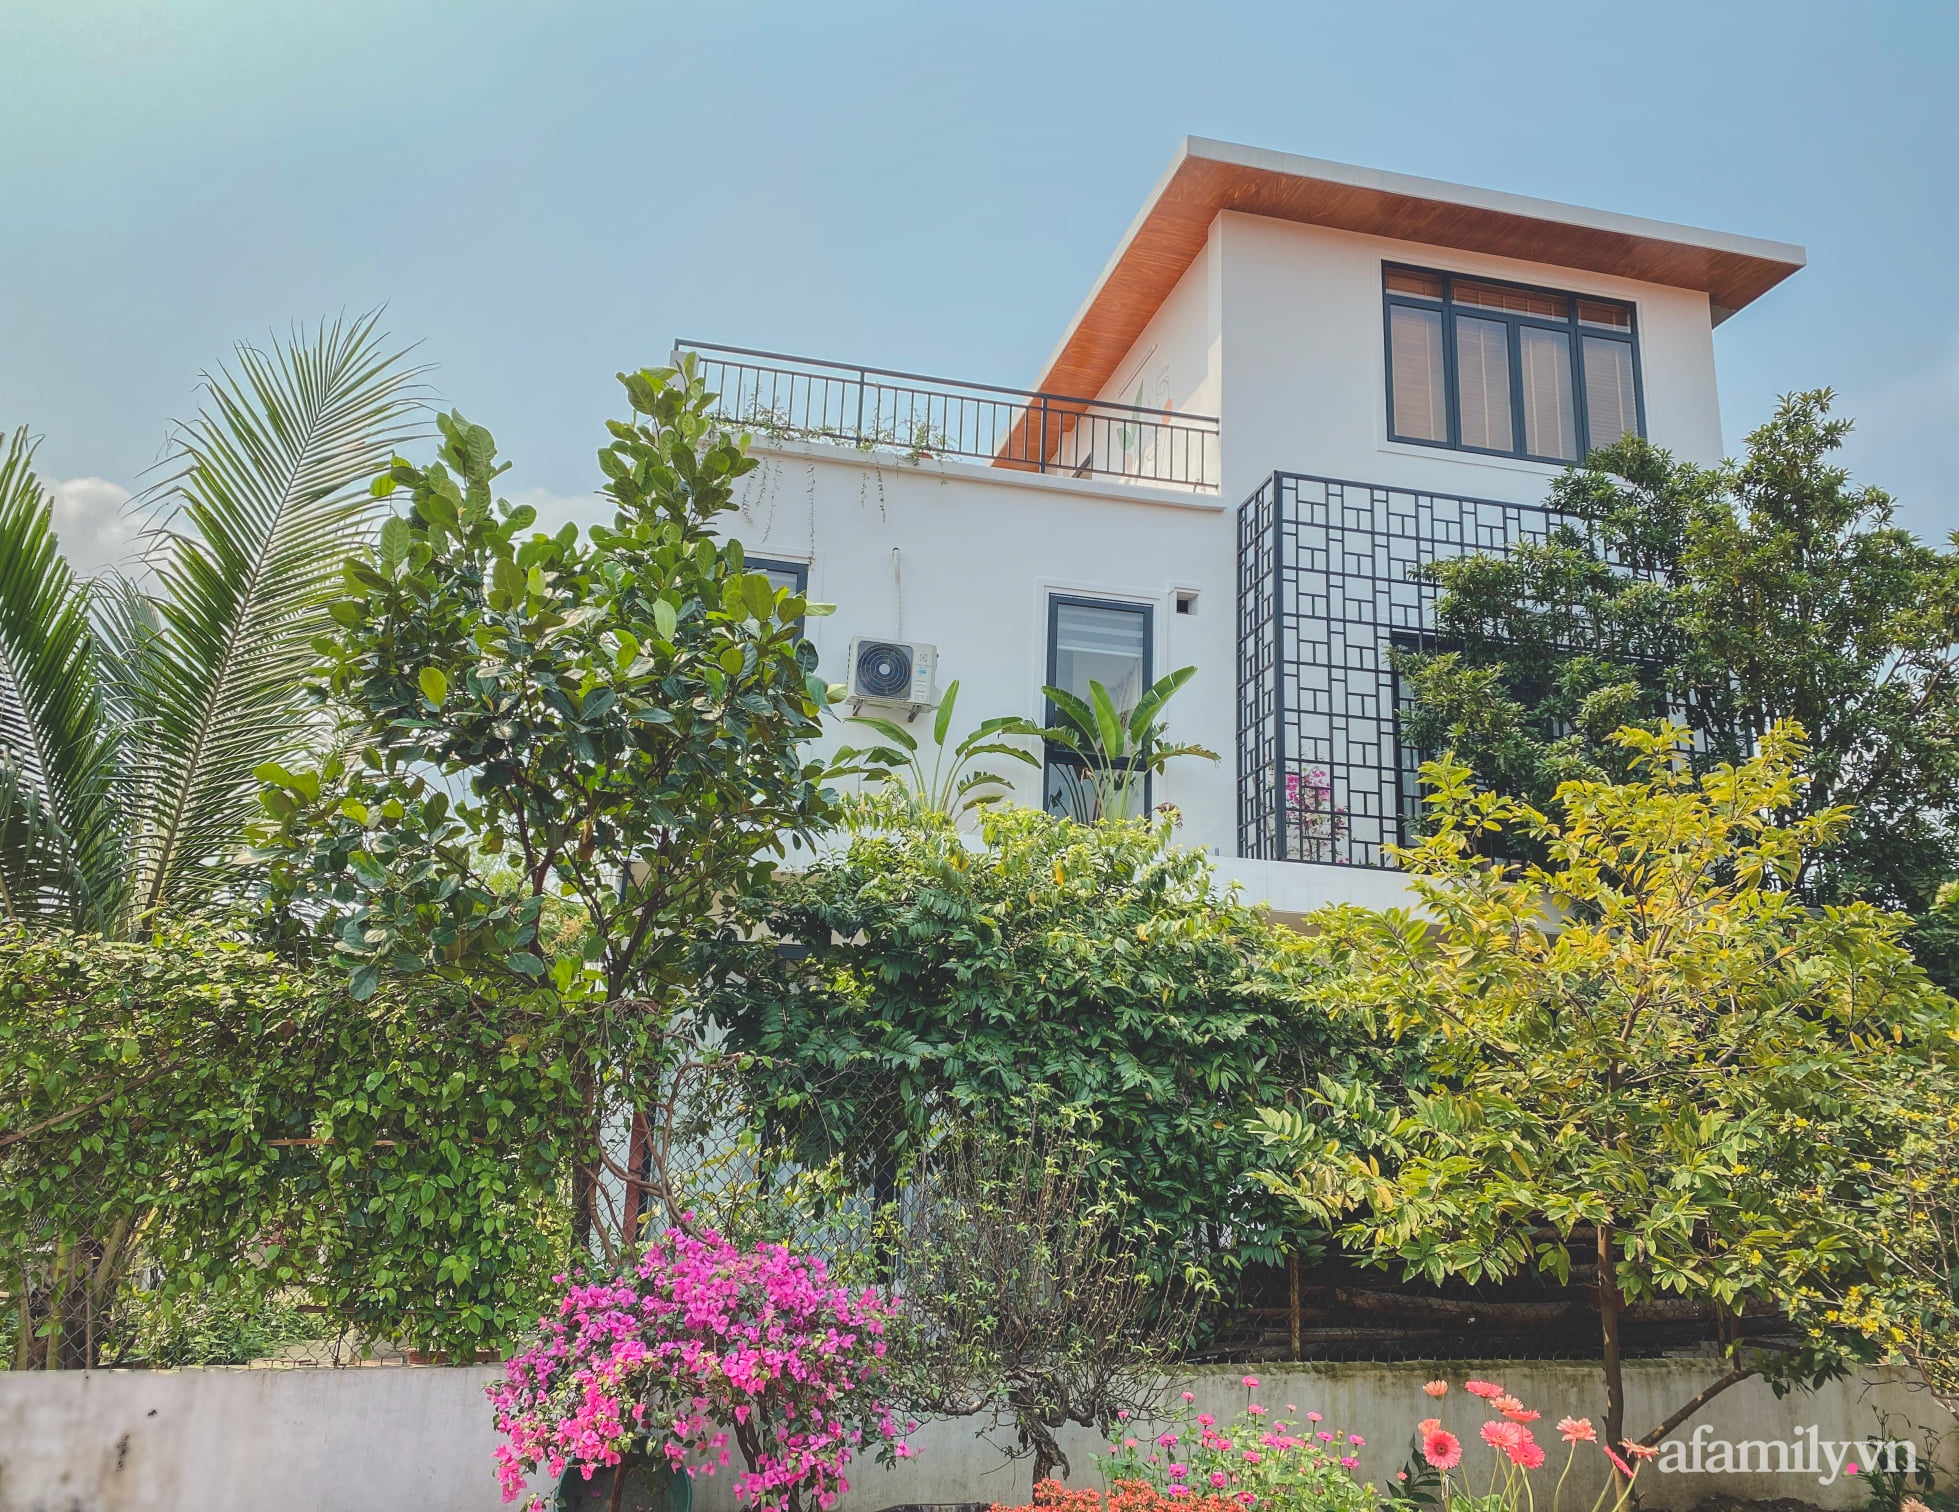 Căn nhà 90 m² đẹp bình yên, xanh mát bóng cây giữa làng cổ Đường Lâm, Hà Nội - Ảnh 1.